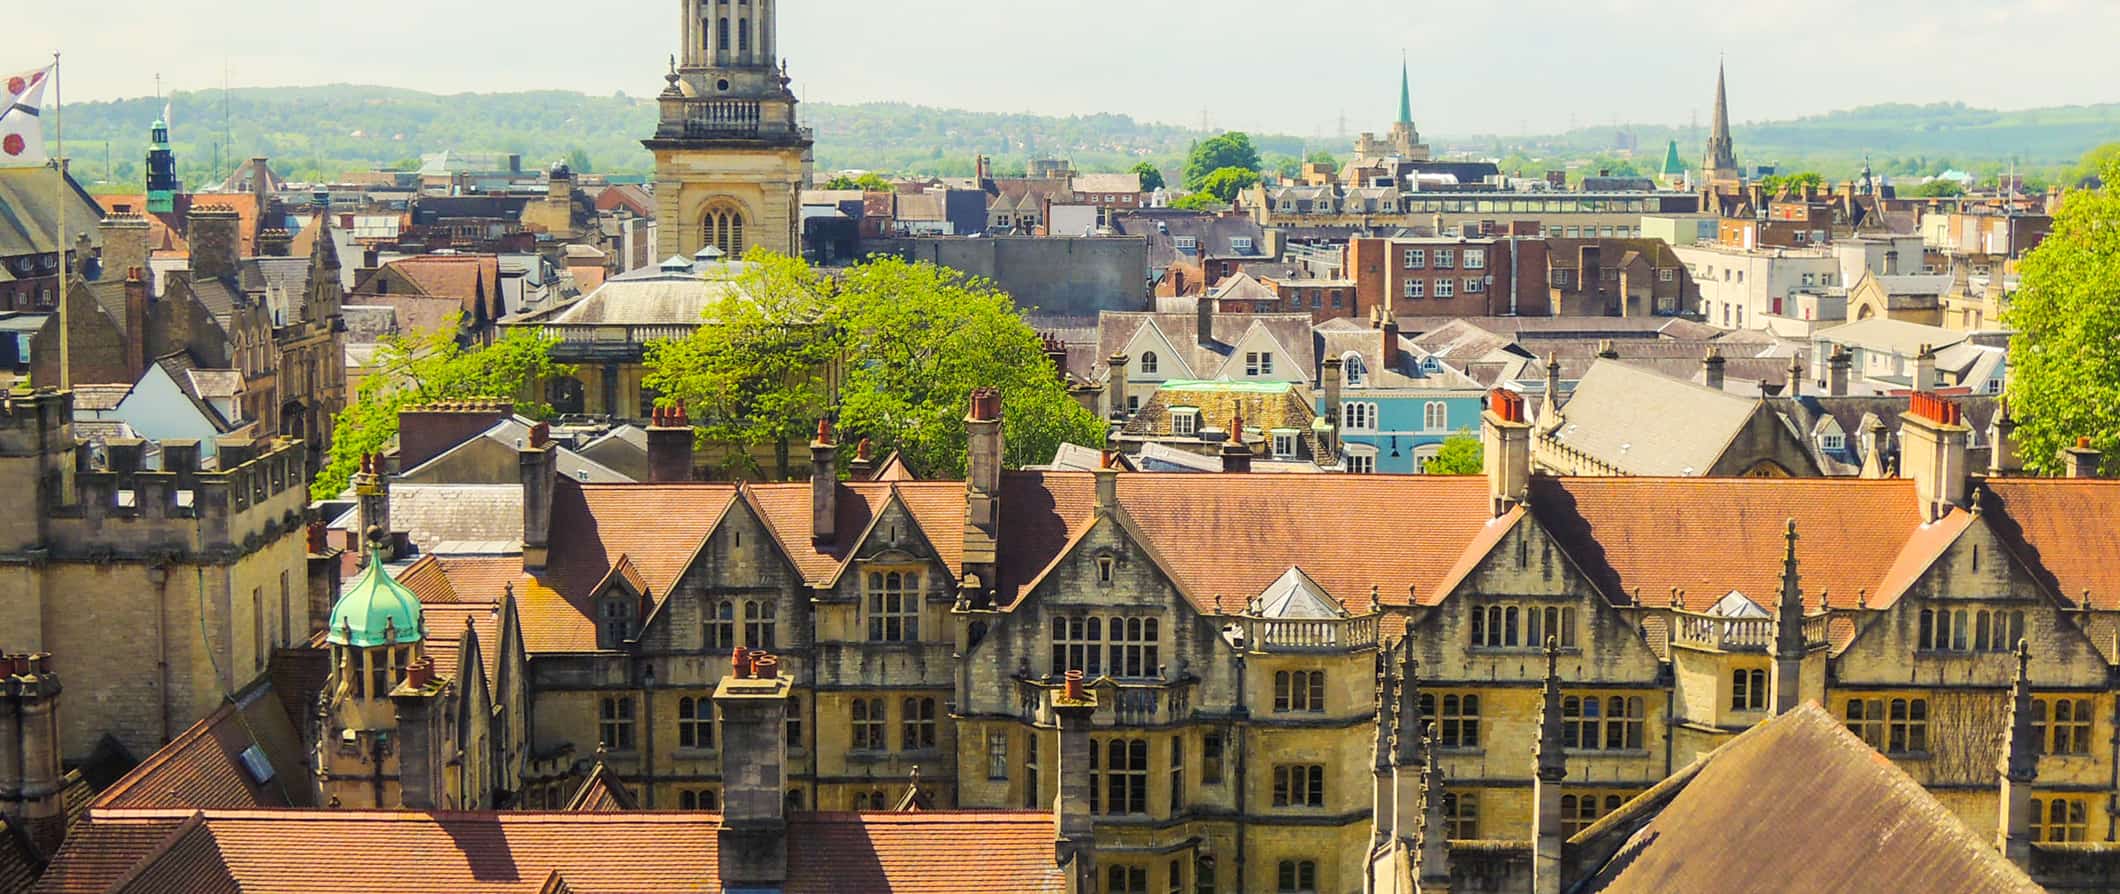 Edifícios peculiares em Oxford, Reino Unido, em um dia ensolarado com colinas ao longe